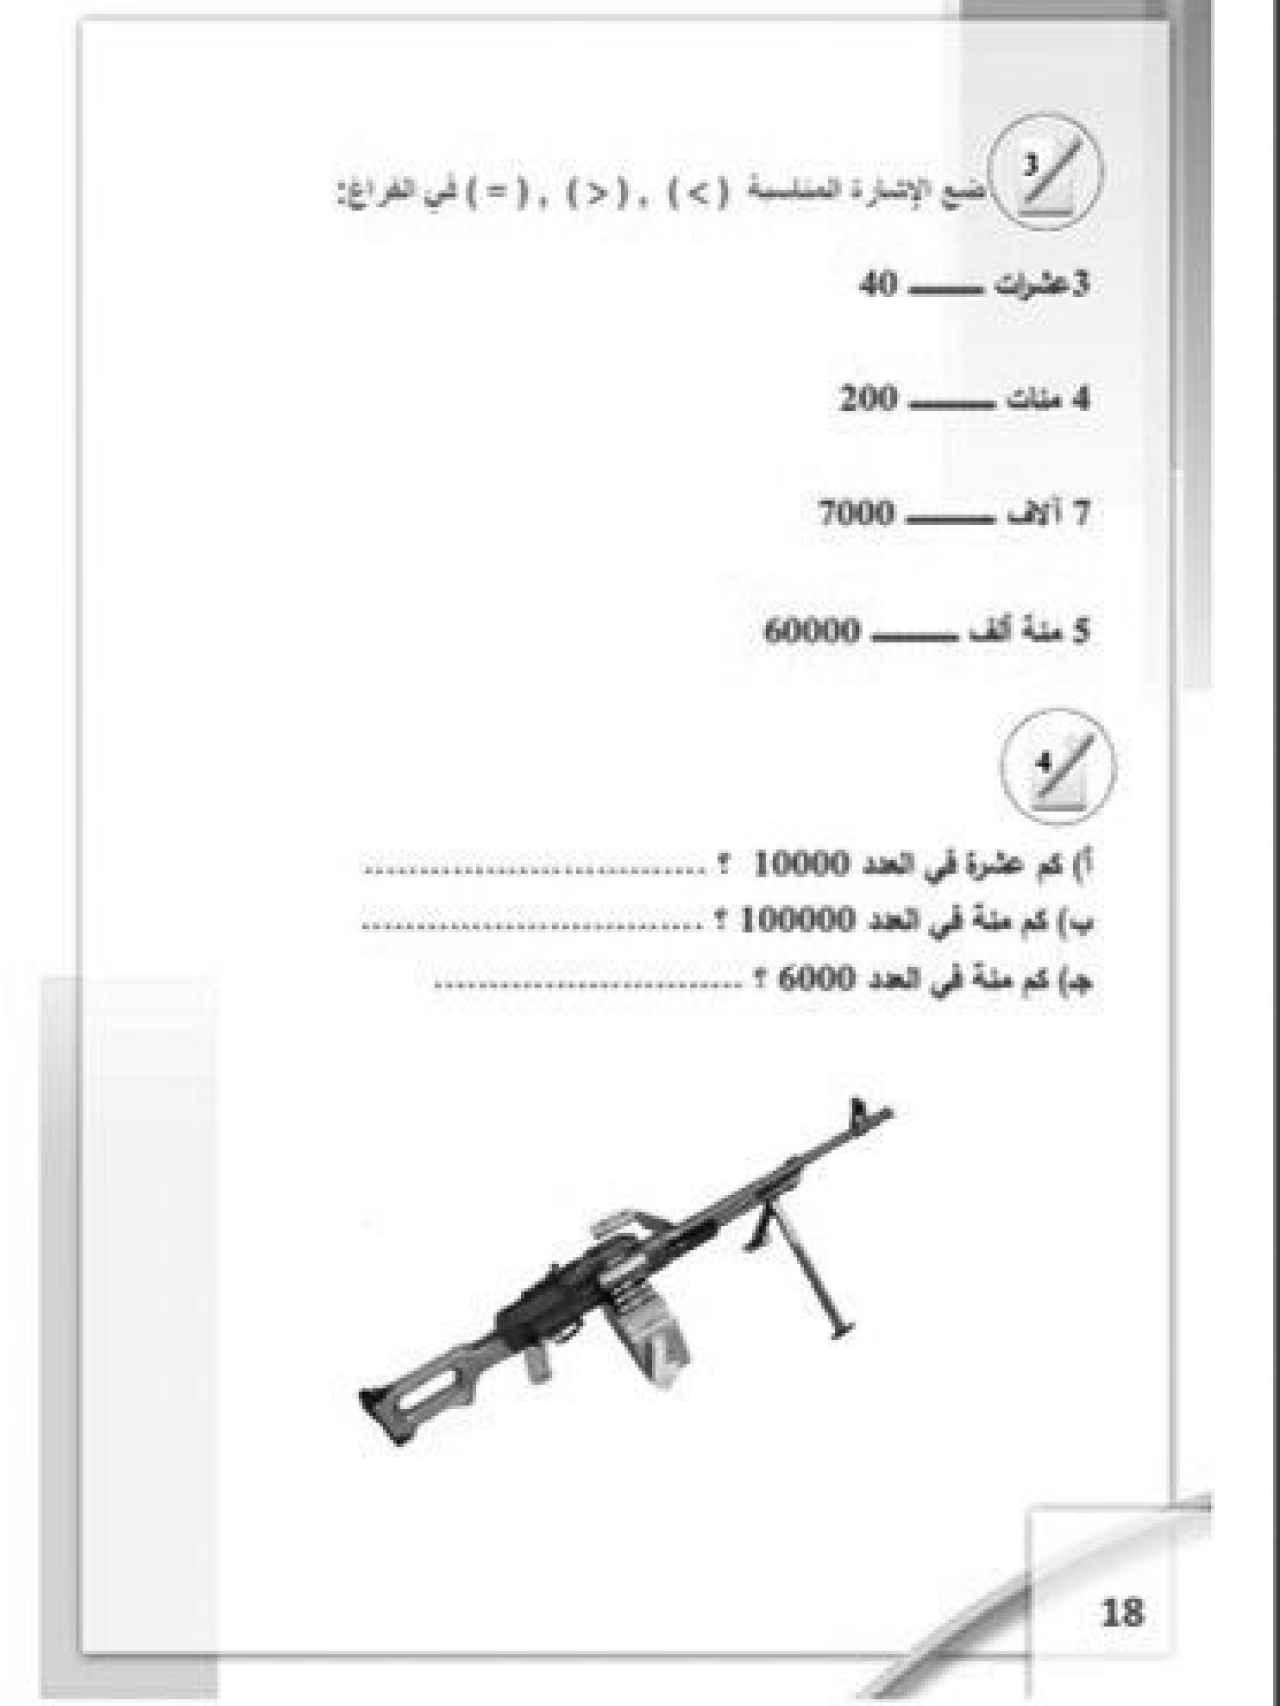 Arma en un libro de texto de matemáticas del grupo terrorista Estado Islámico.